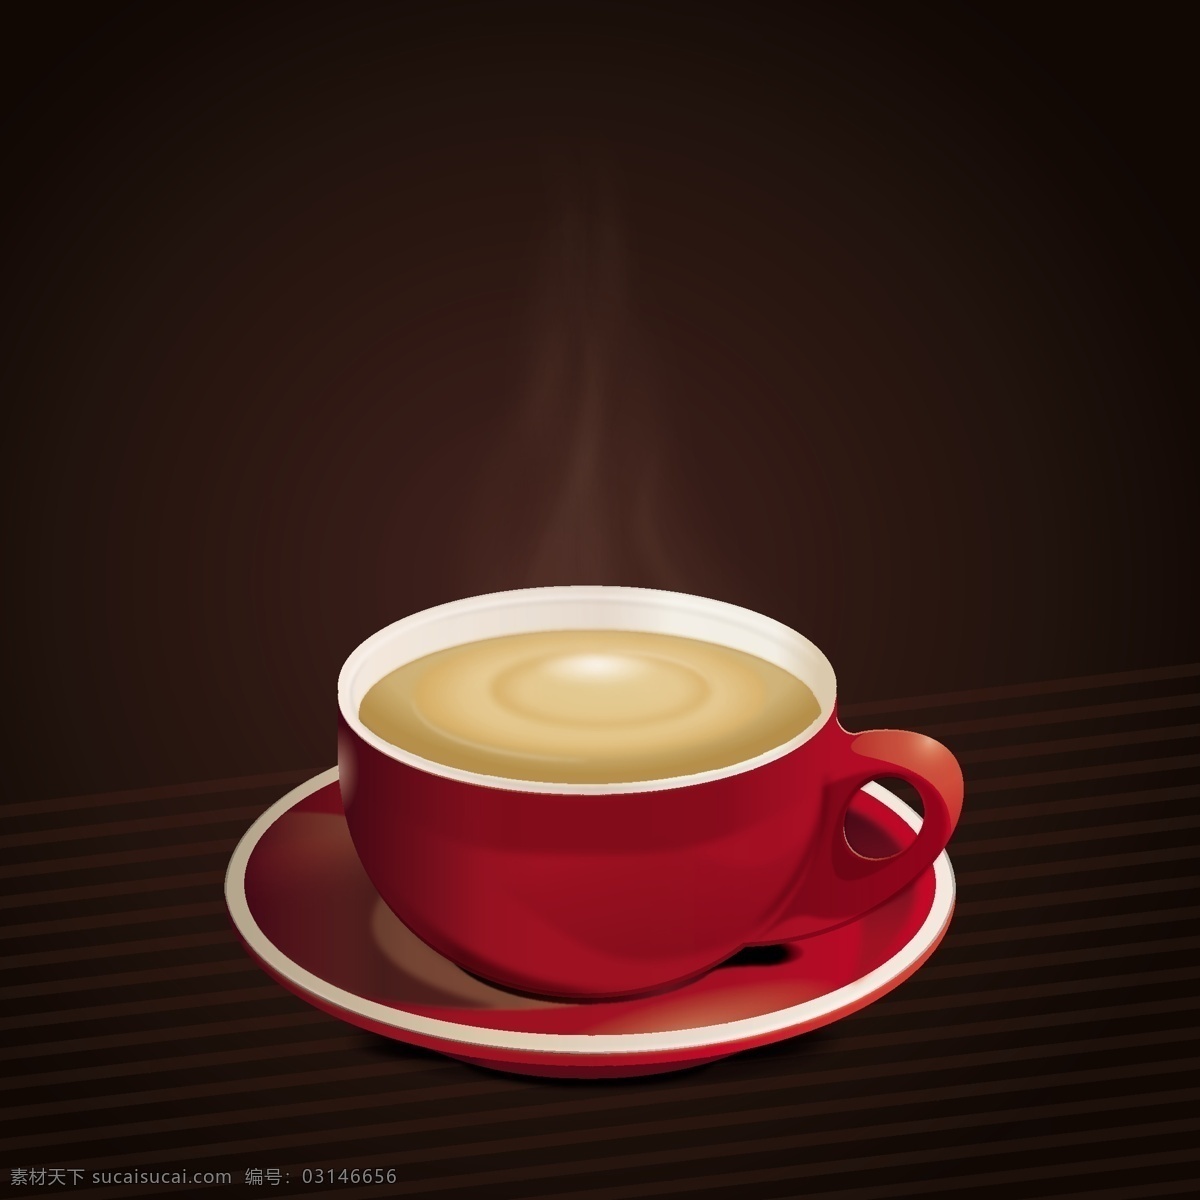 精致咖啡杯 精致 咖啡杯 咖啡 coffee 咖啡豆 陶瓷杯 热咖啡 优质咖啡 精选咖啡 进口咖啡 热气 气 香气 奶茶 生活用品 矢量 生活百科